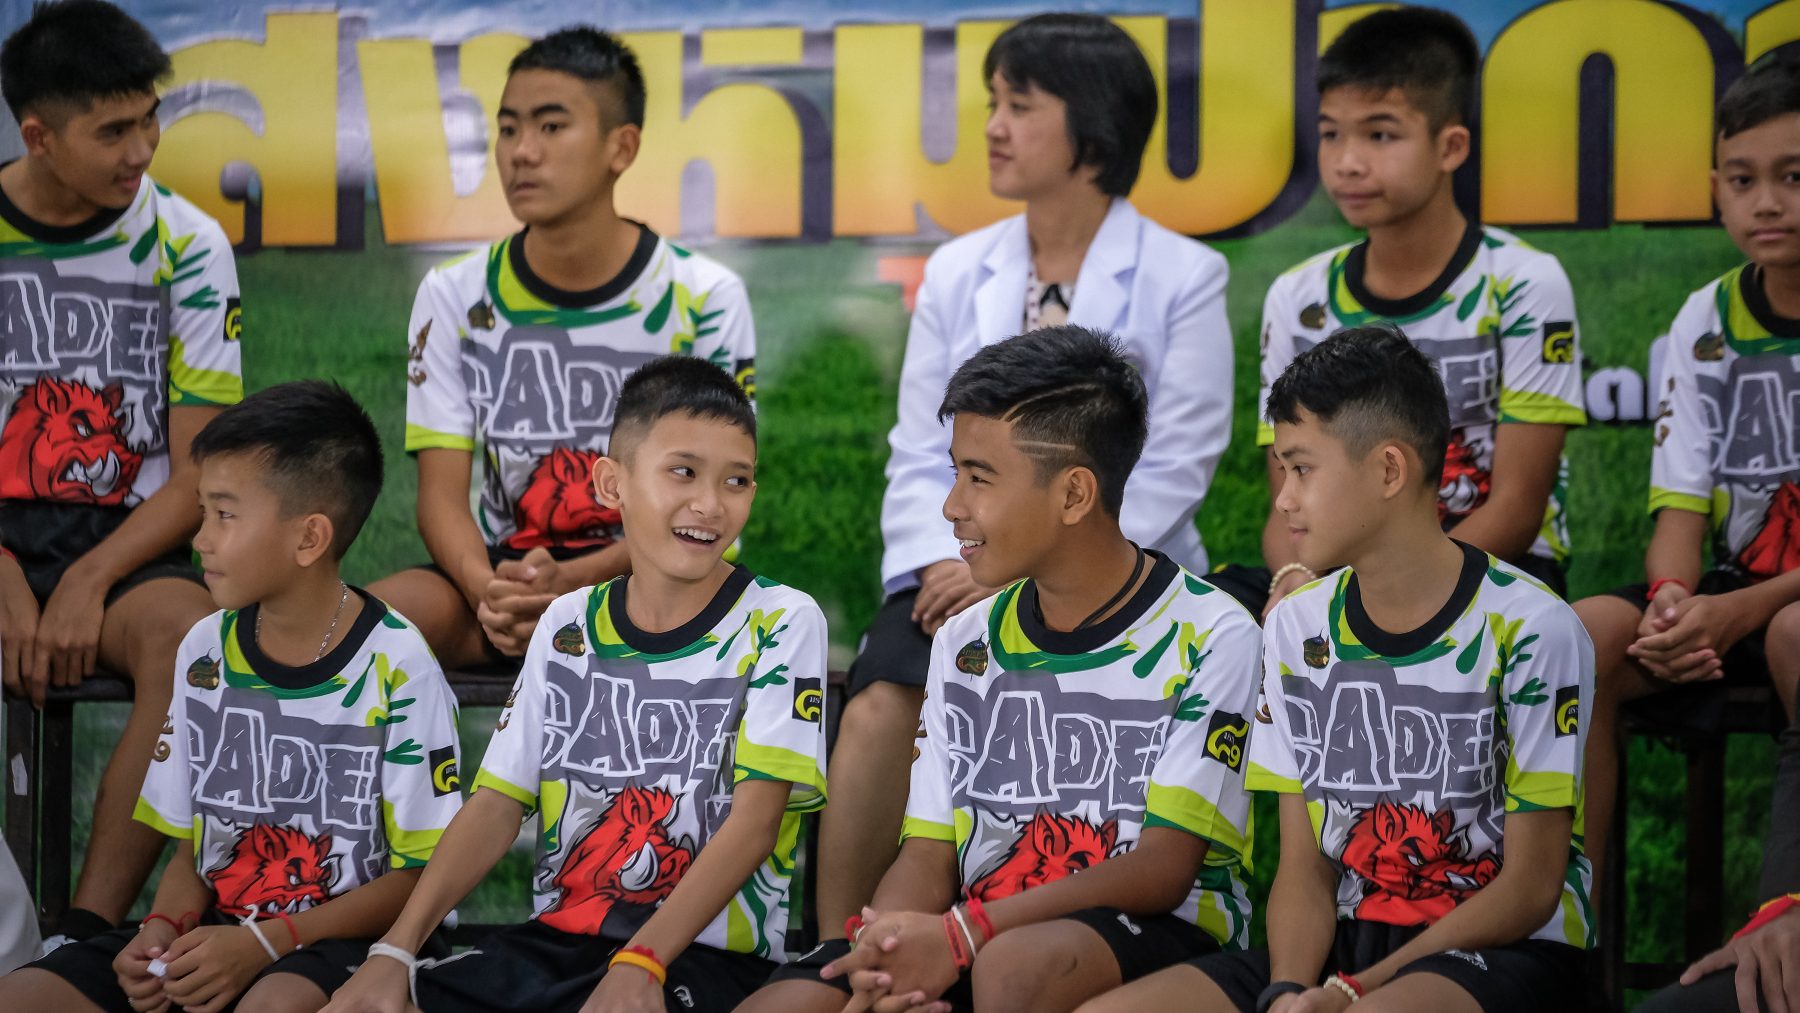 Thaise voetballers uit grot in één klap rijk door mini-serie